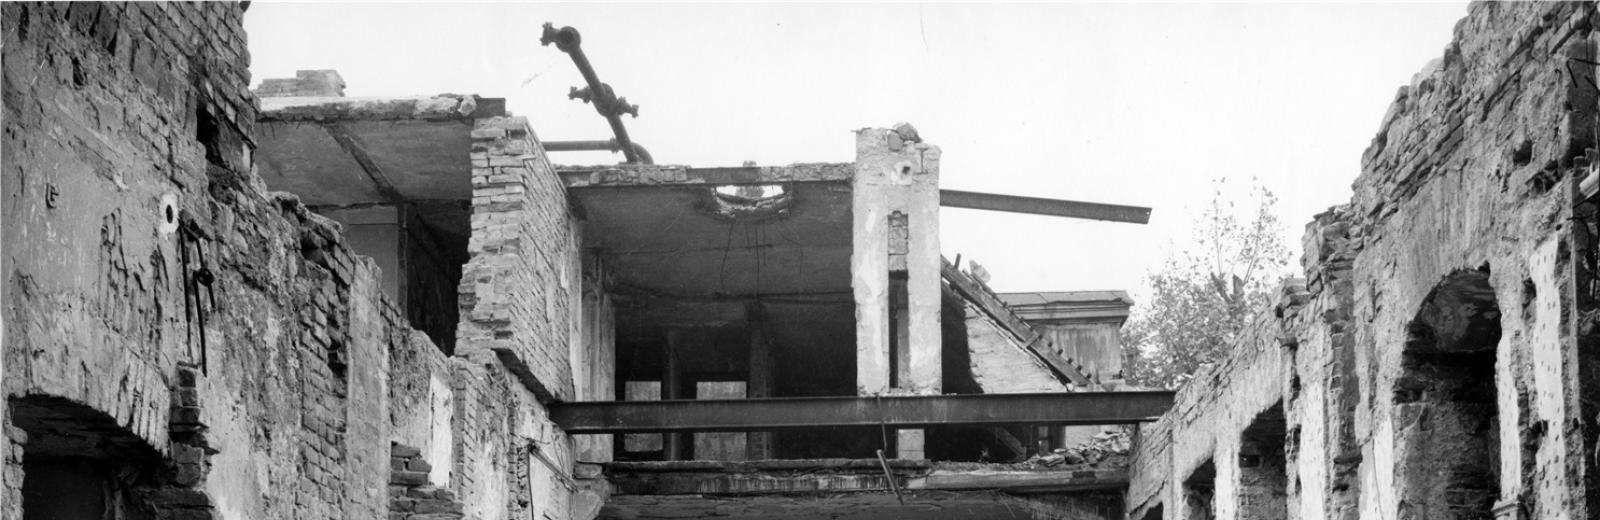 Carl Lutz im Innenhof der zerstörten britischen Gesandtschaft © Archiv für Zeitgeschichte ETH Zürich / Agnes Hirschi